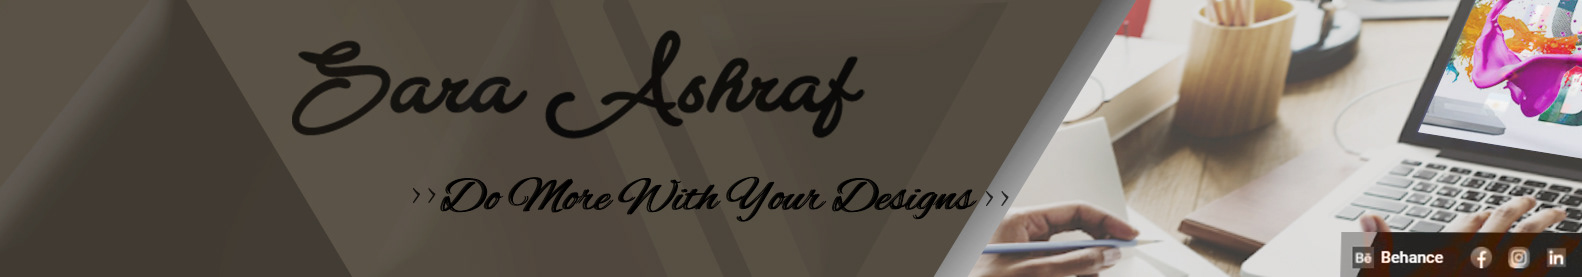 Sara Ashraf's profile banner